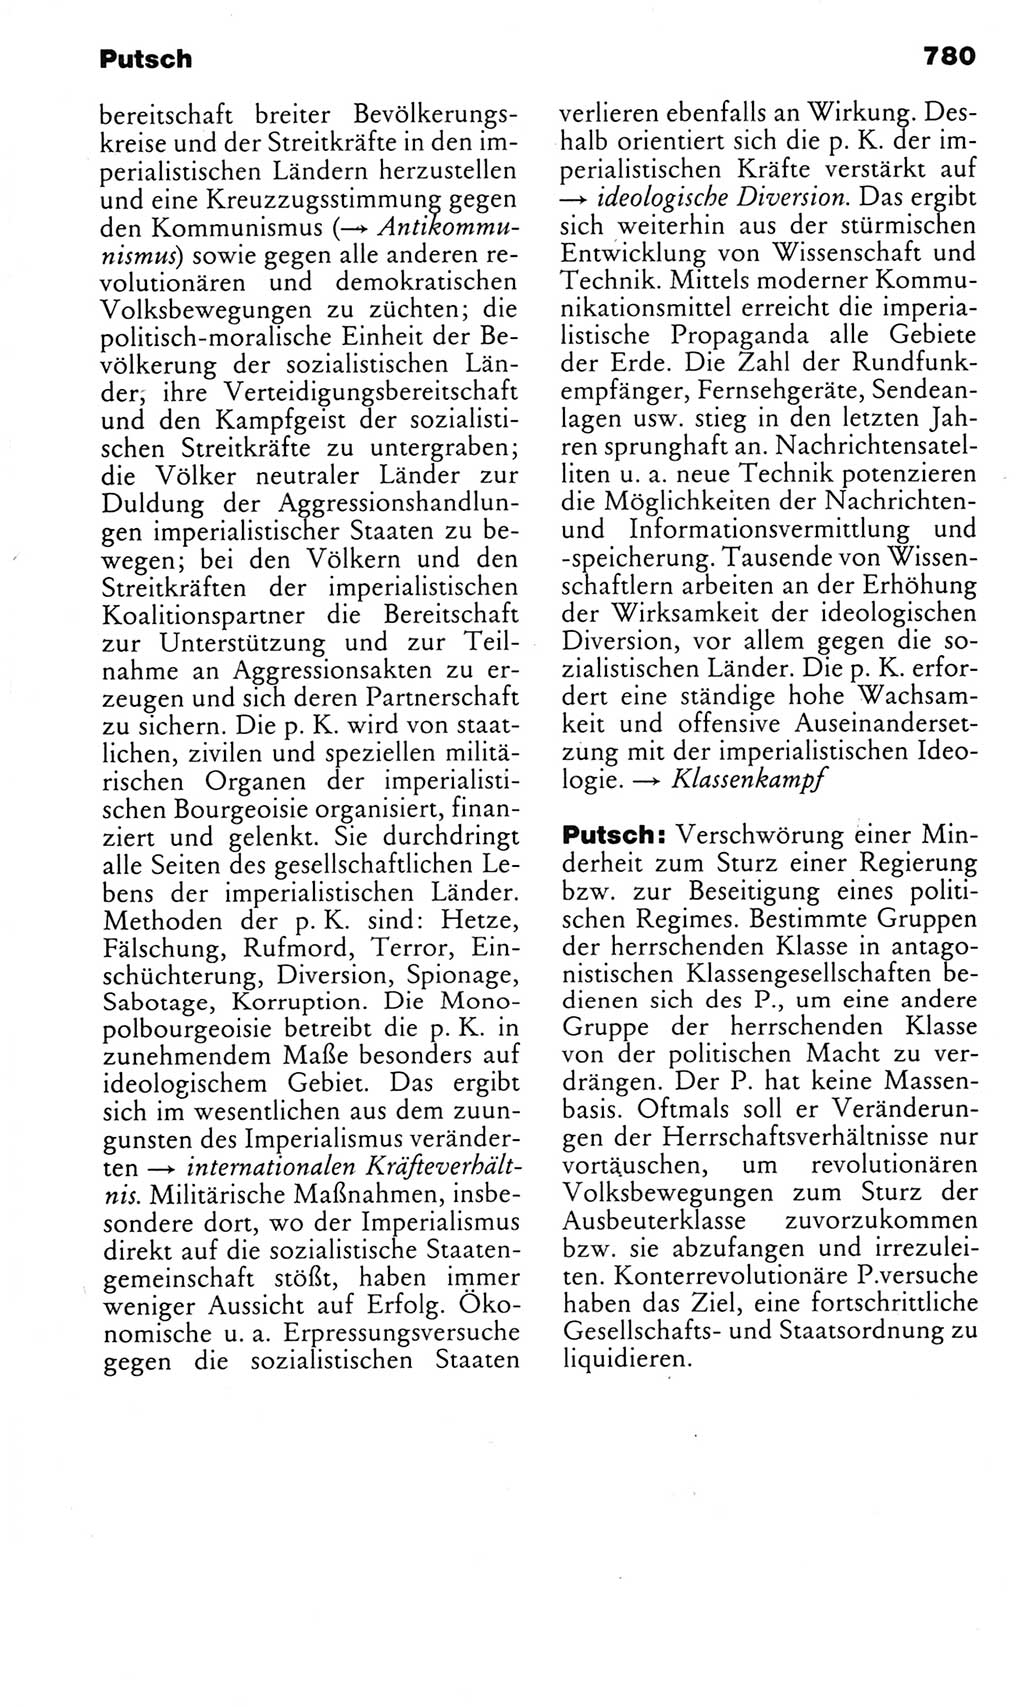 Kleines politisches Wörterbuch [Deutsche Demokratische Republik (DDR)] 1983, Seite 780 (Kl. pol. Wb. DDR 1983, S. 780)